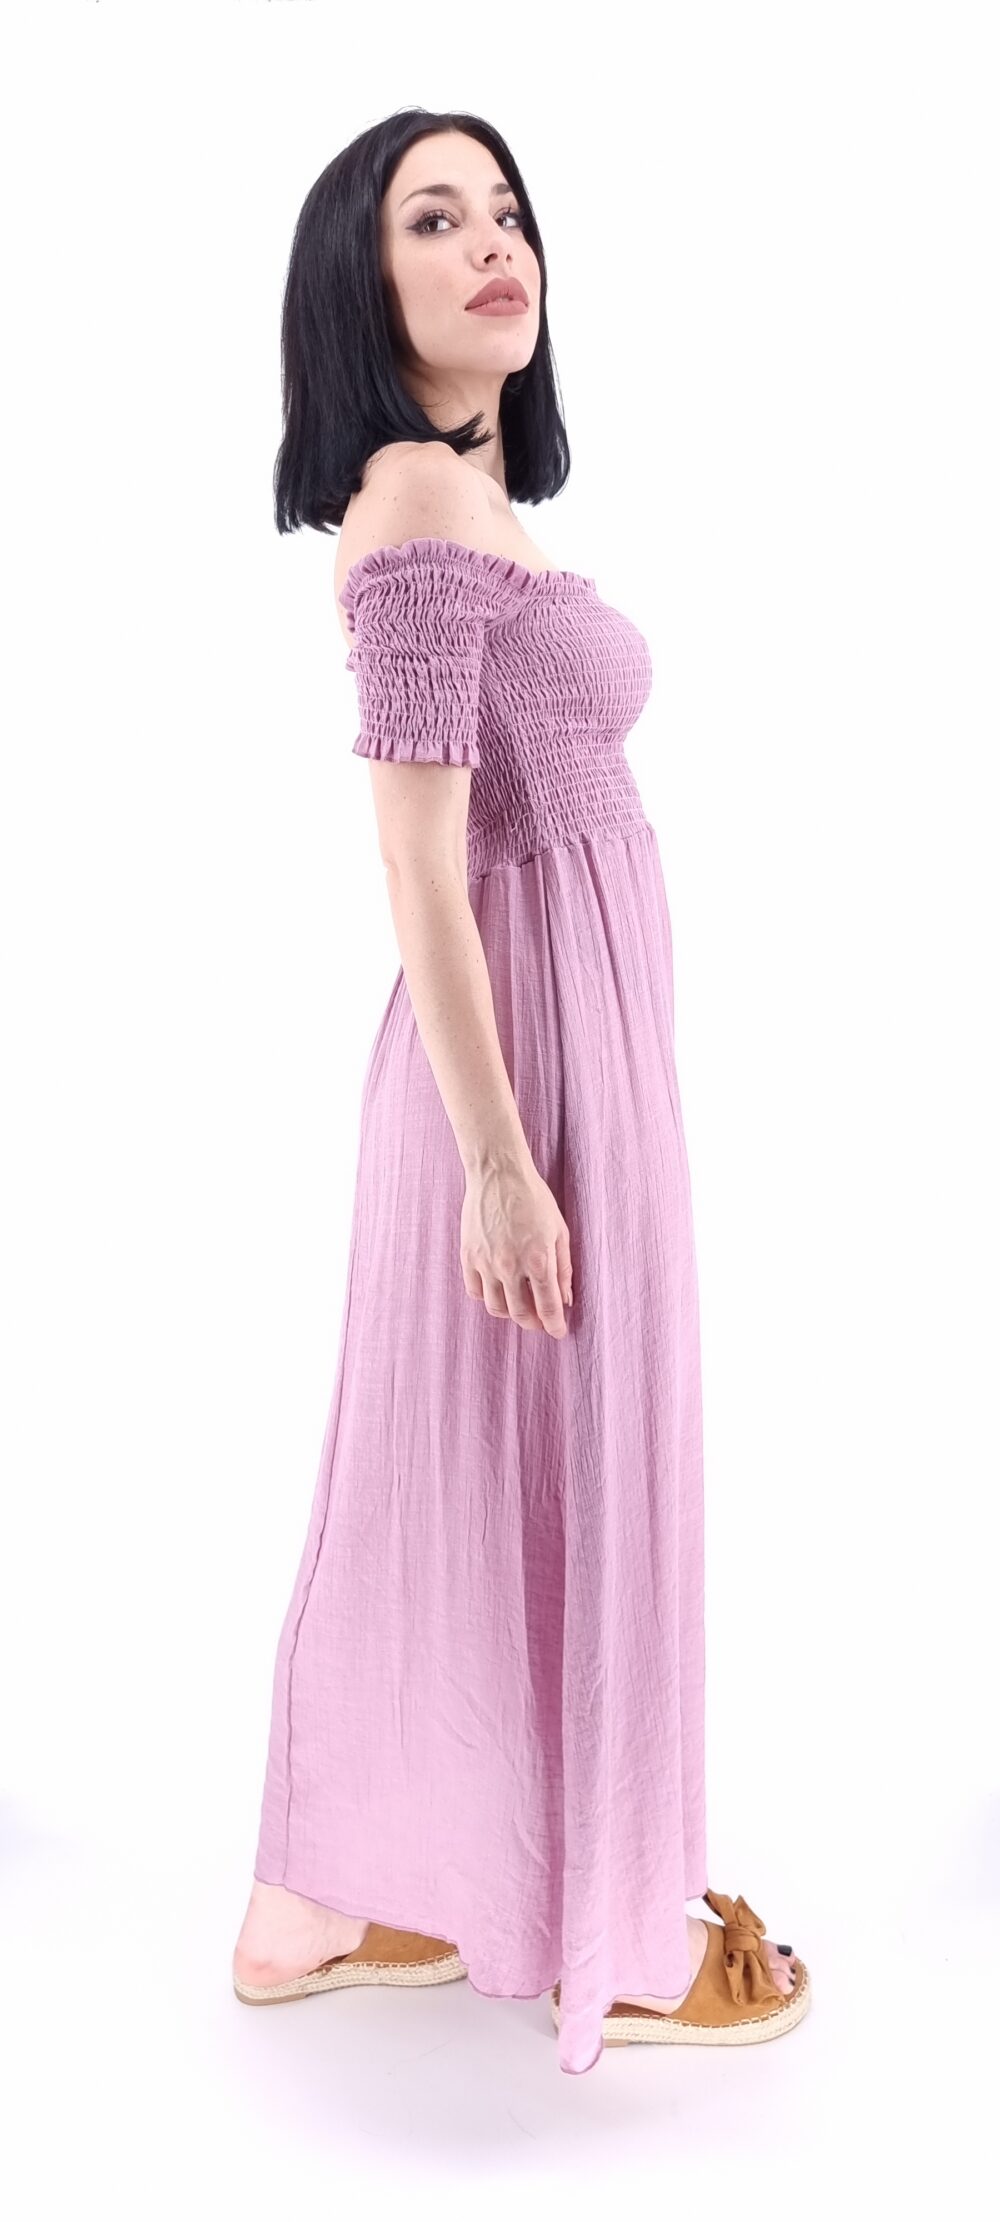 Φόρεμα μακρύ με σφιγγοφωλιά ροζ